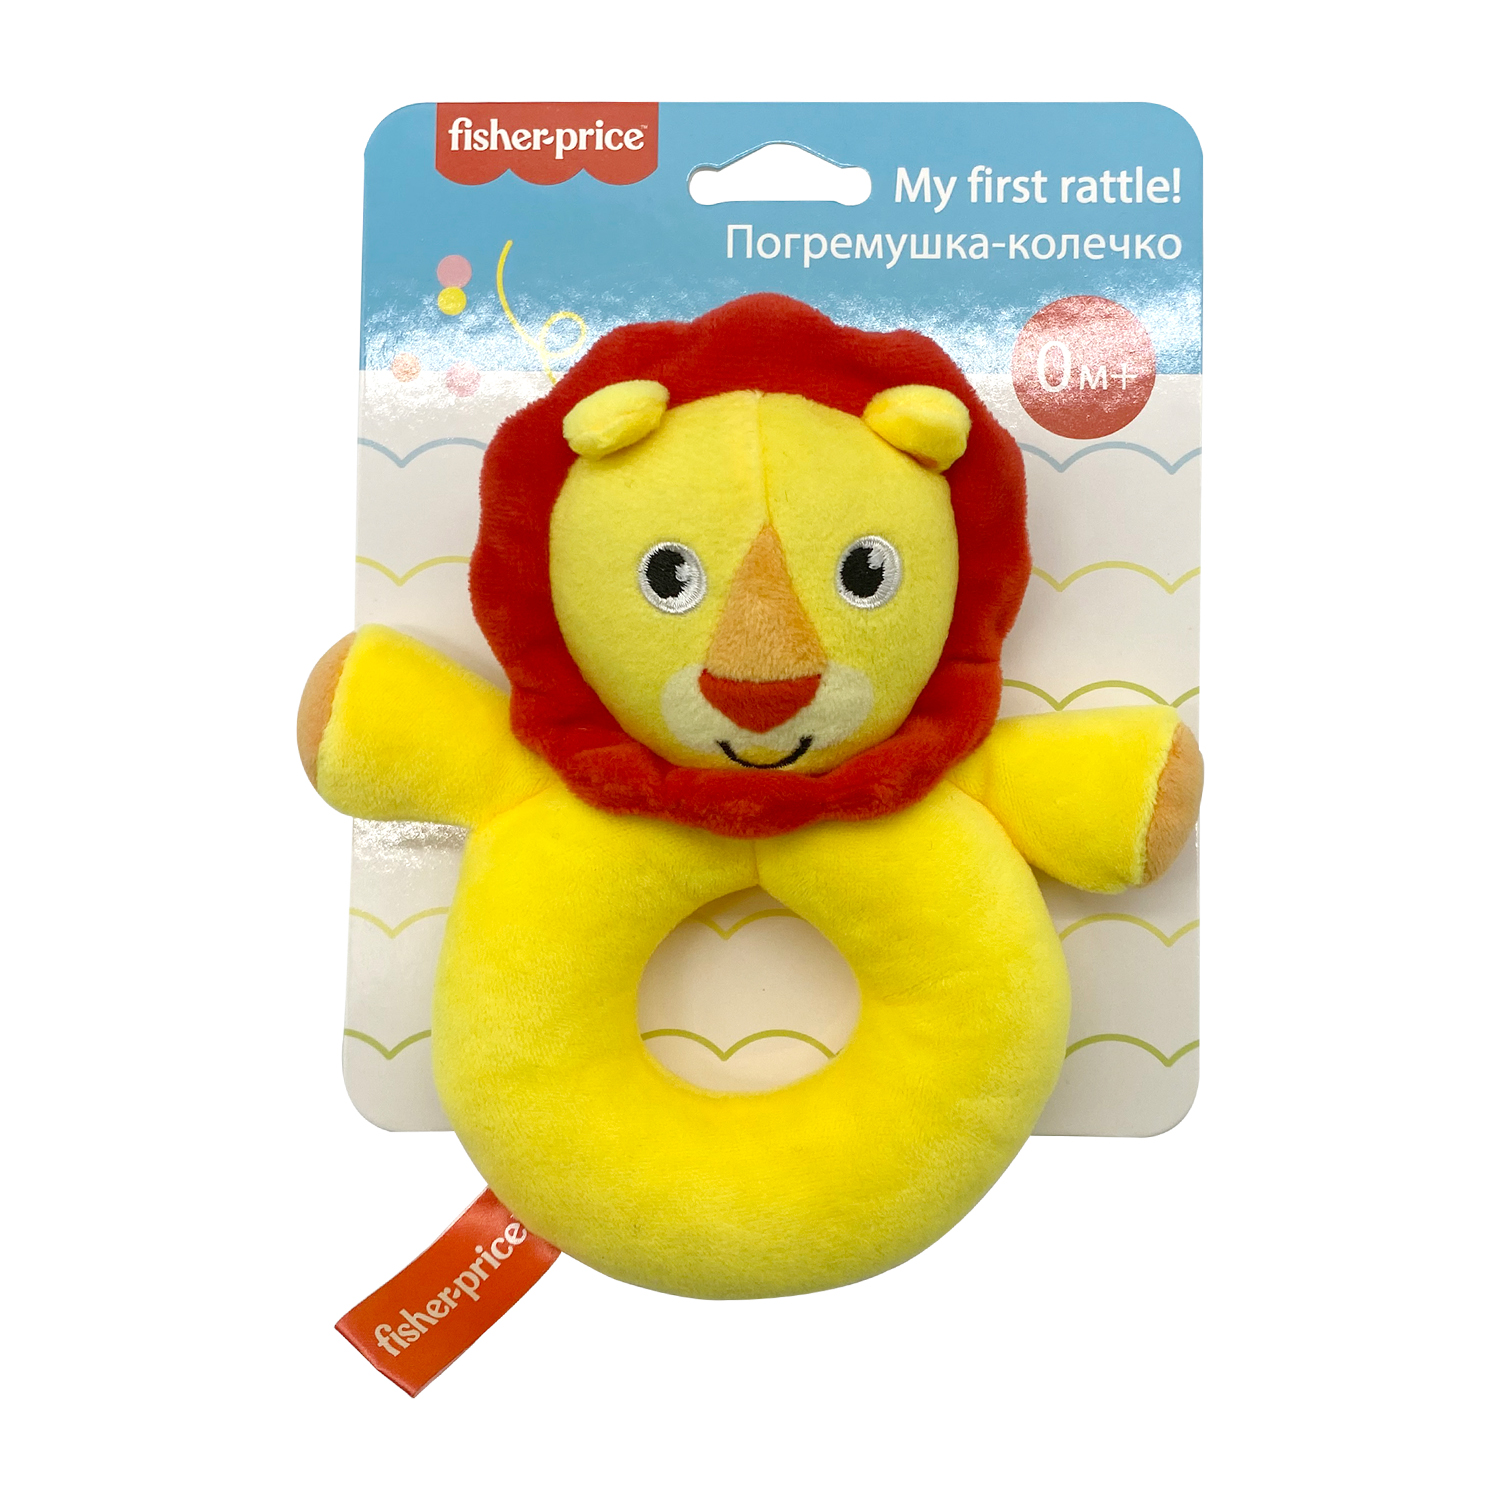 Погремушка-колечко FISHER PRICE Львенок развивающая мягкая игрушка для детей 0+ - фото 2